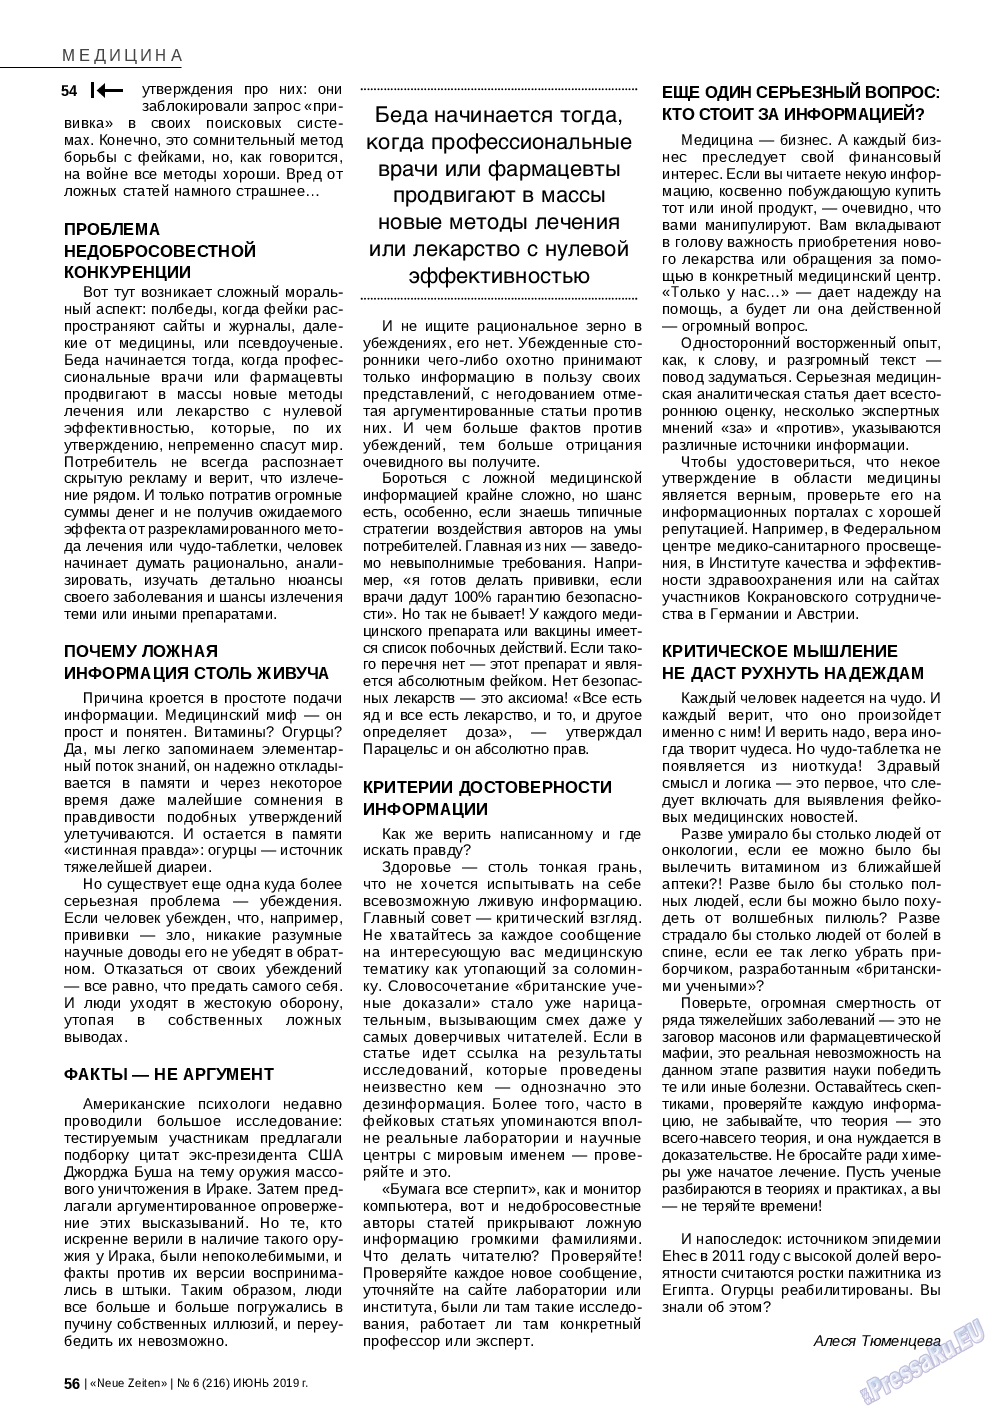 Neue Zeiten, журнал. 2019 №6 стр.56